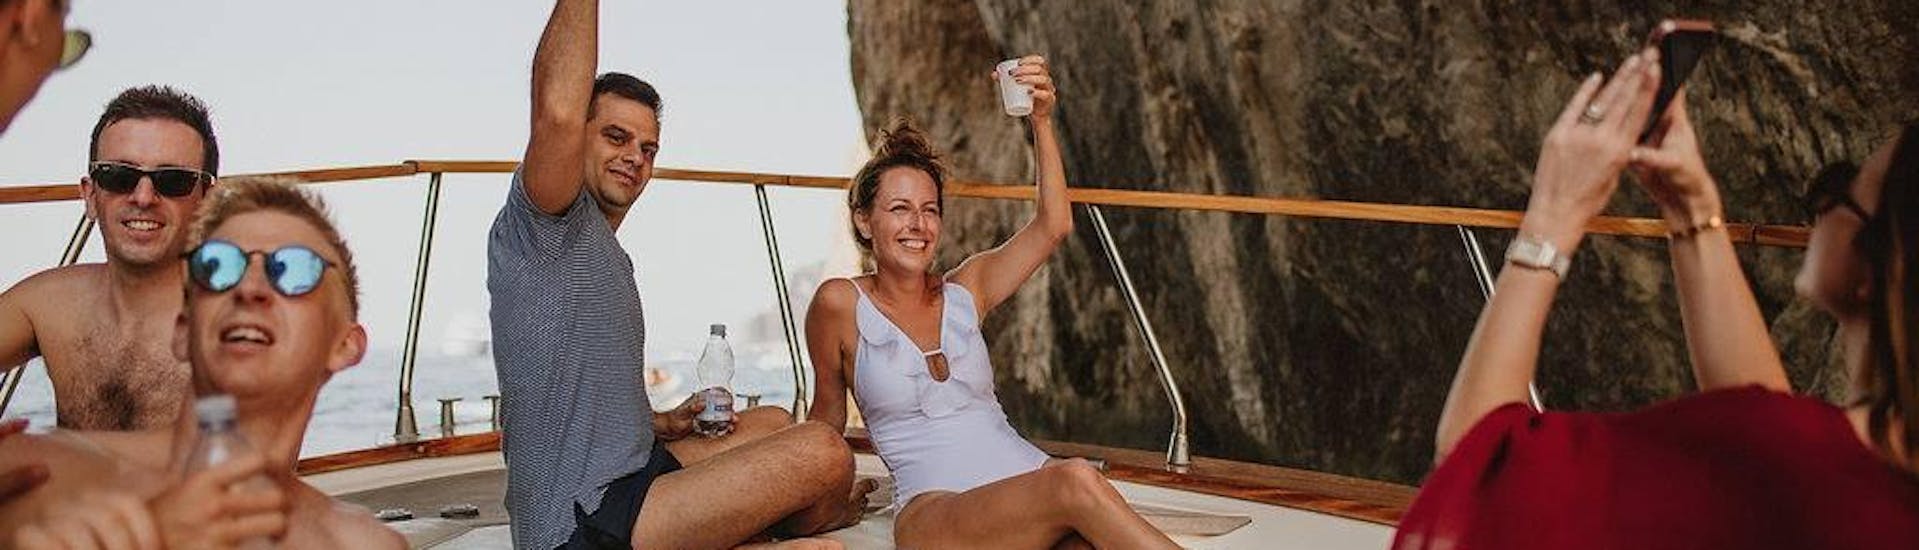 Menschen, die jubelnd auf einem Boot liegen und mit Getränken in der Hand, während einer privaten Bootsfahrt um die Insel Capri mit dem Capitano Ago Costiera Amalfitana.